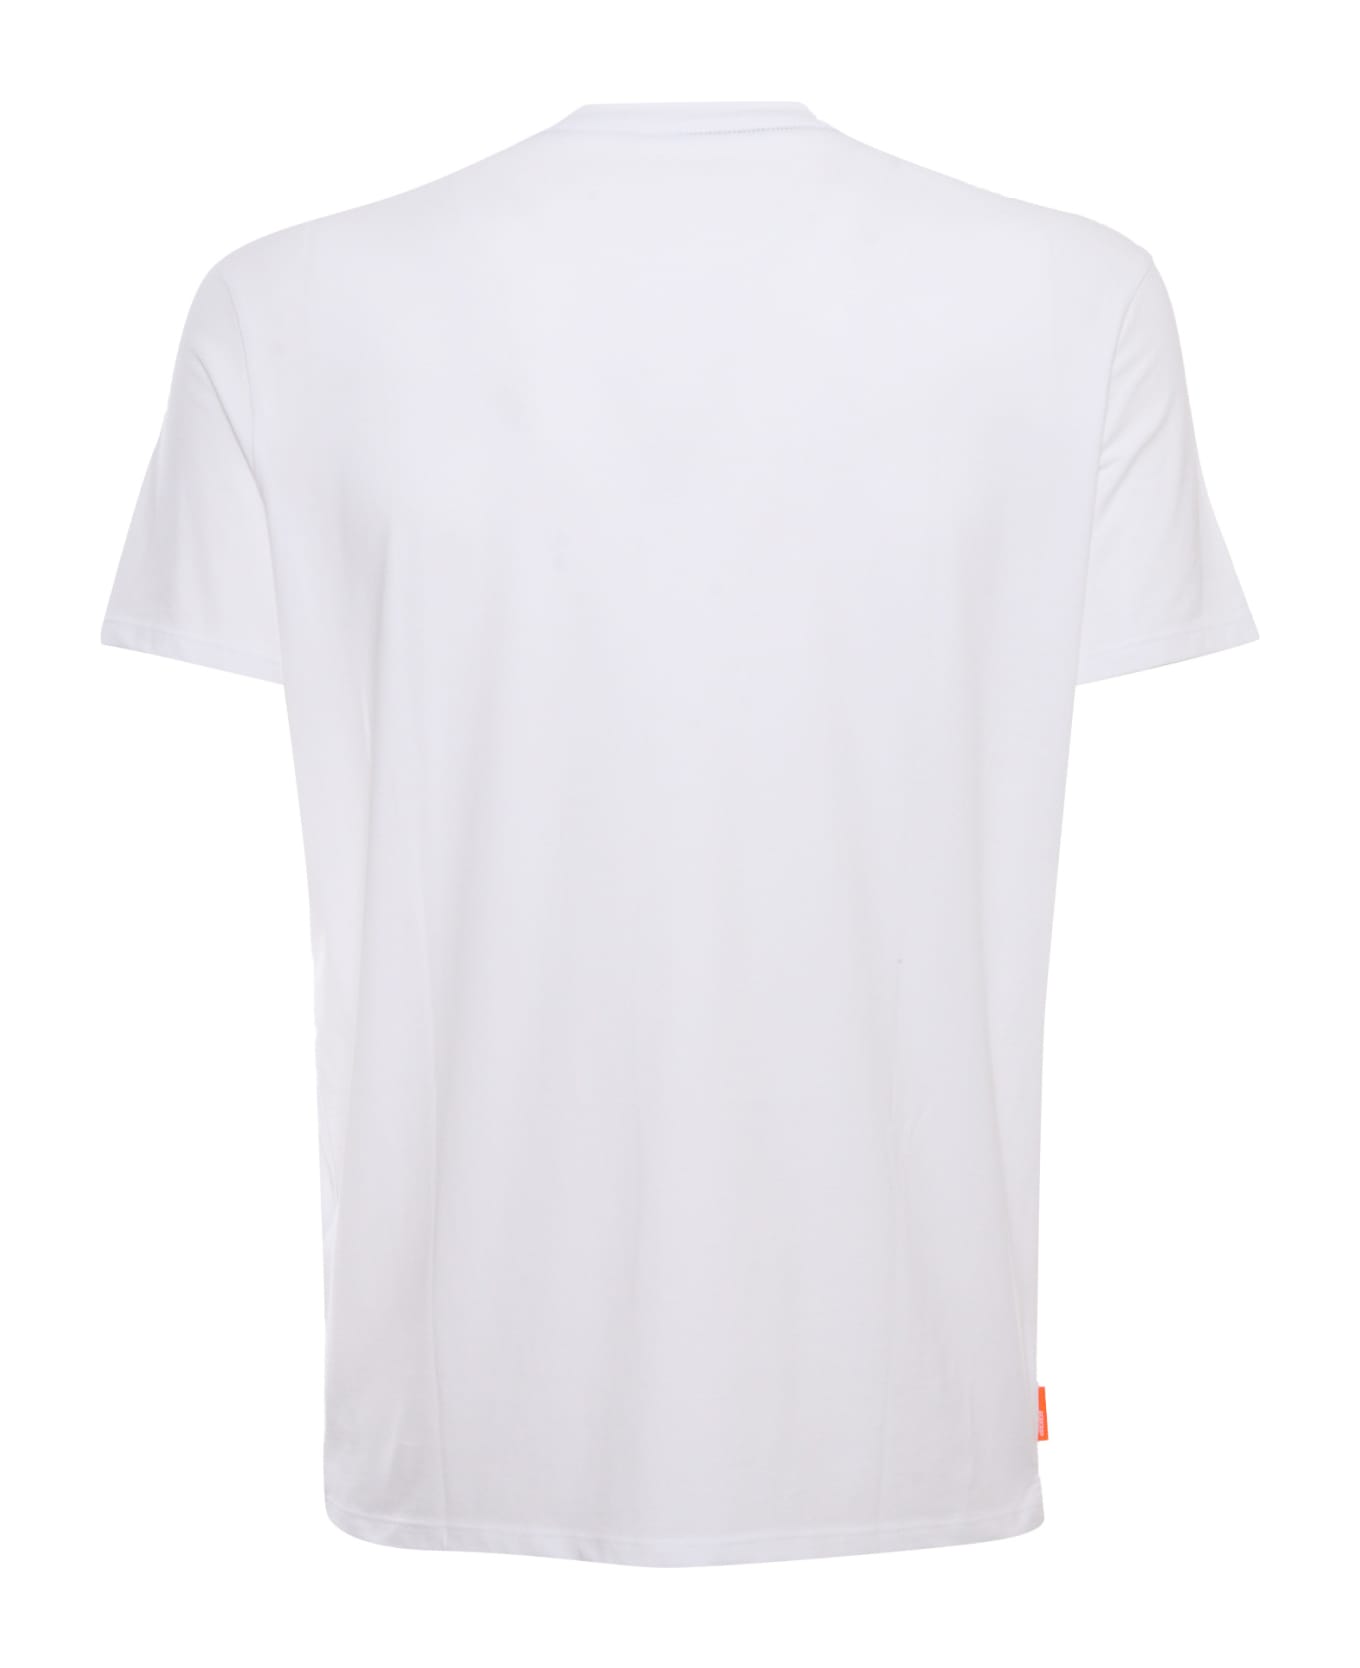 RRD - Roberto Ricci Design Revo White T-shirt - WHITE